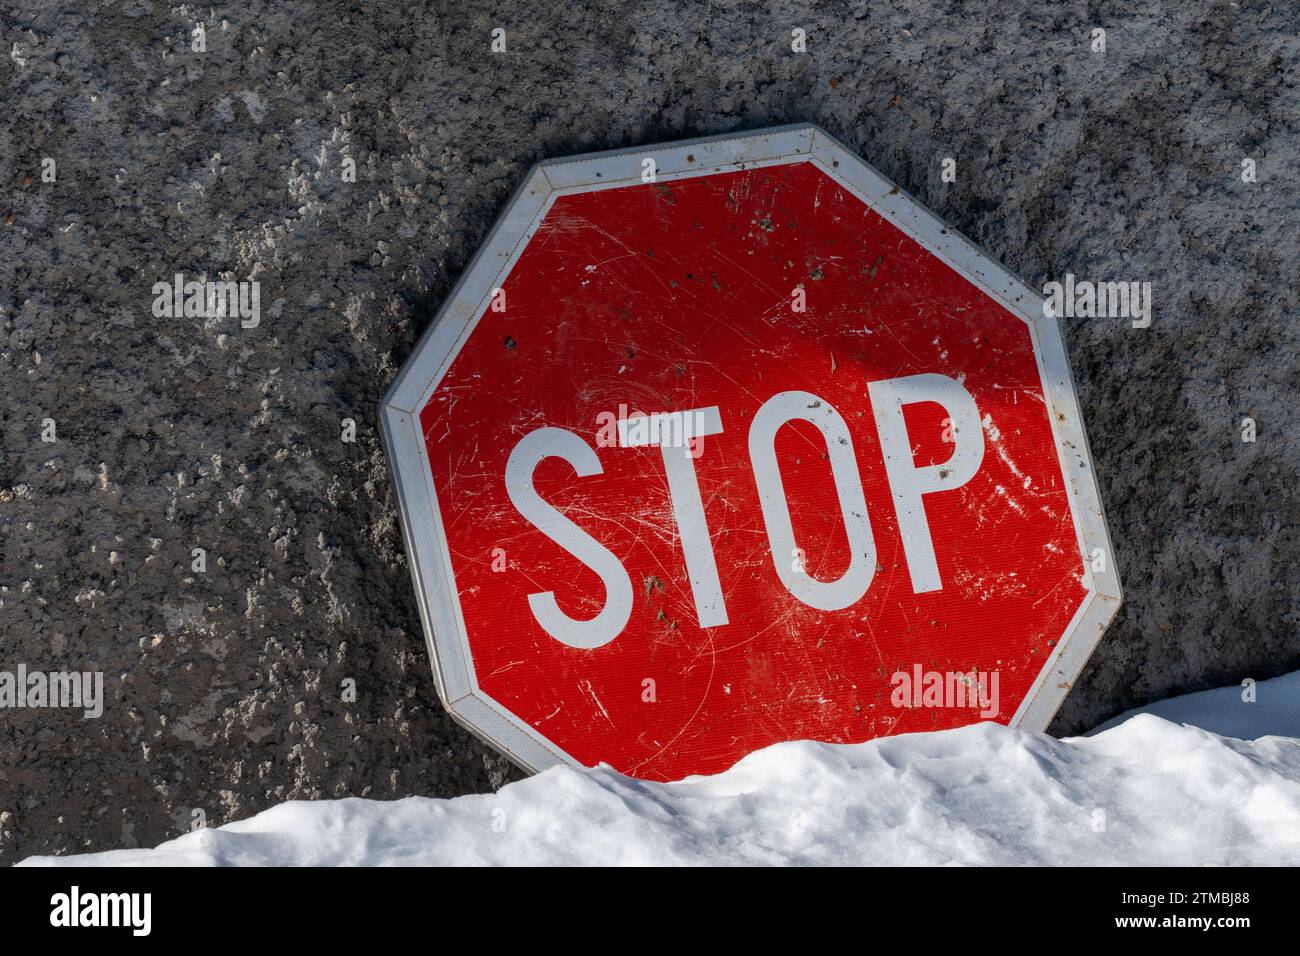 Stop , panneau de signalisation contre fond de mur de béton. Sol recouvert de neige. Couleurs rouge et blanc. Informations. Banque D'Images